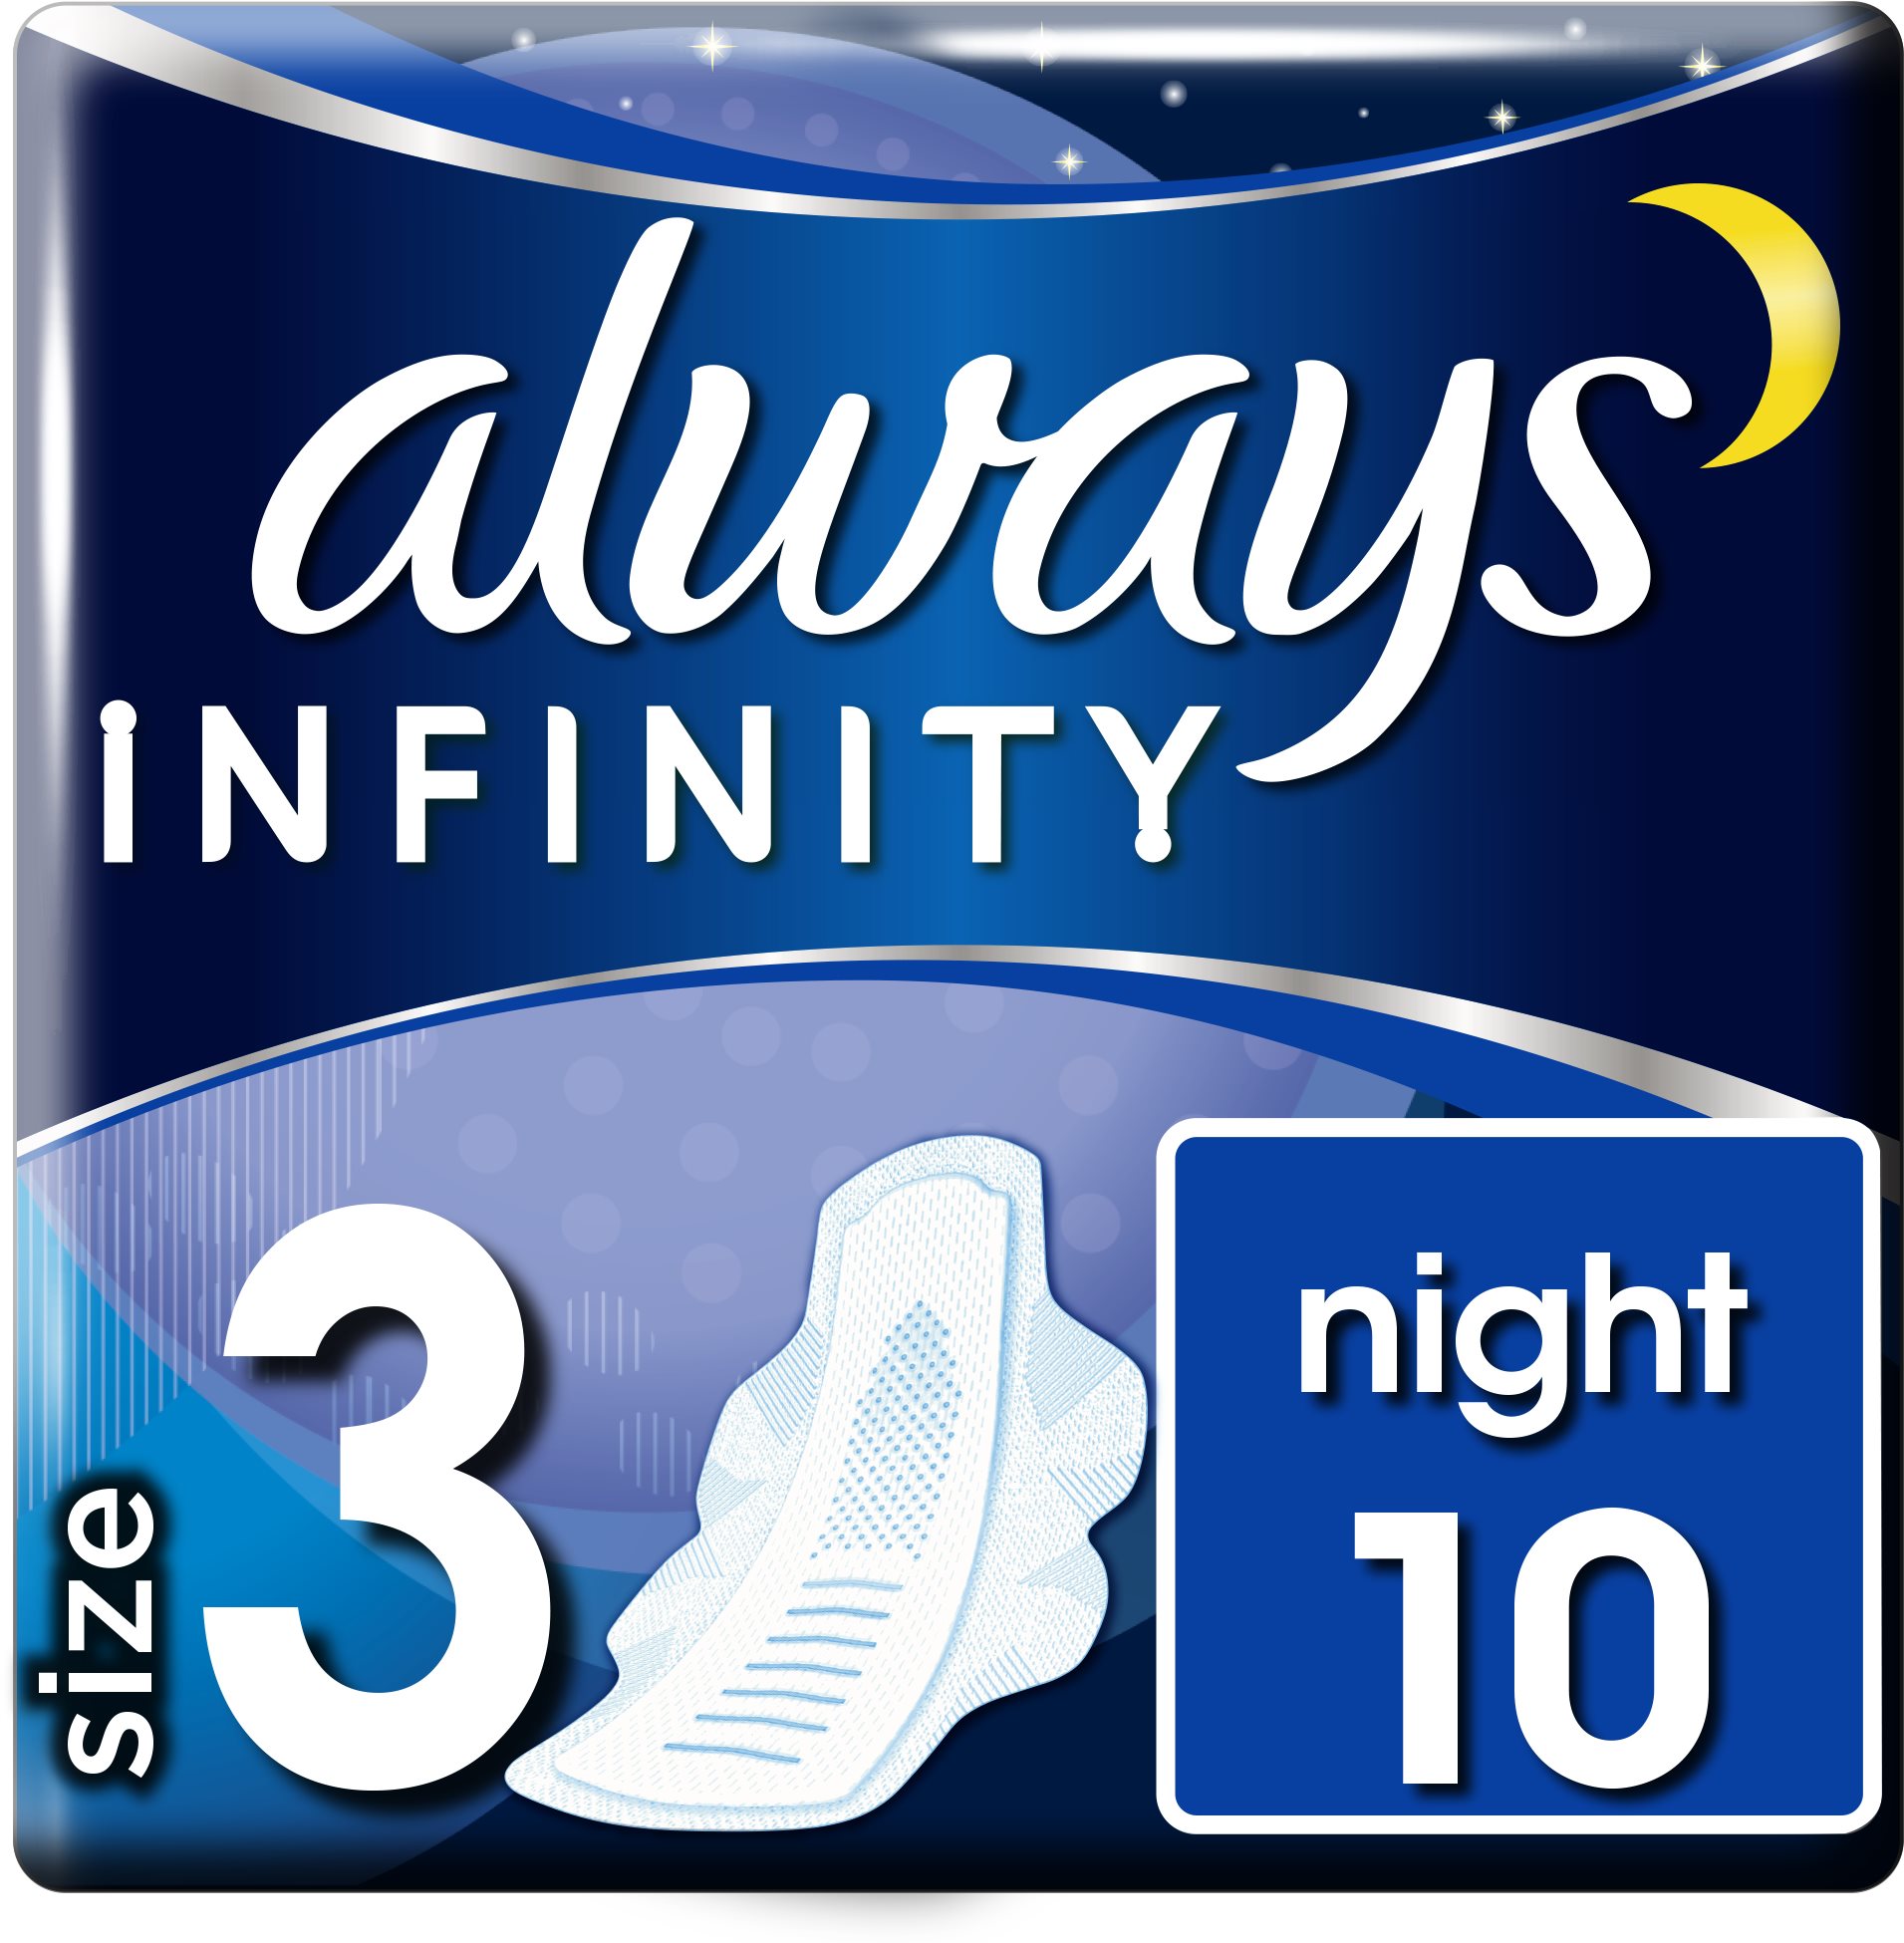 Egészségügyi betét ALWAYS Infinity Night 10 db